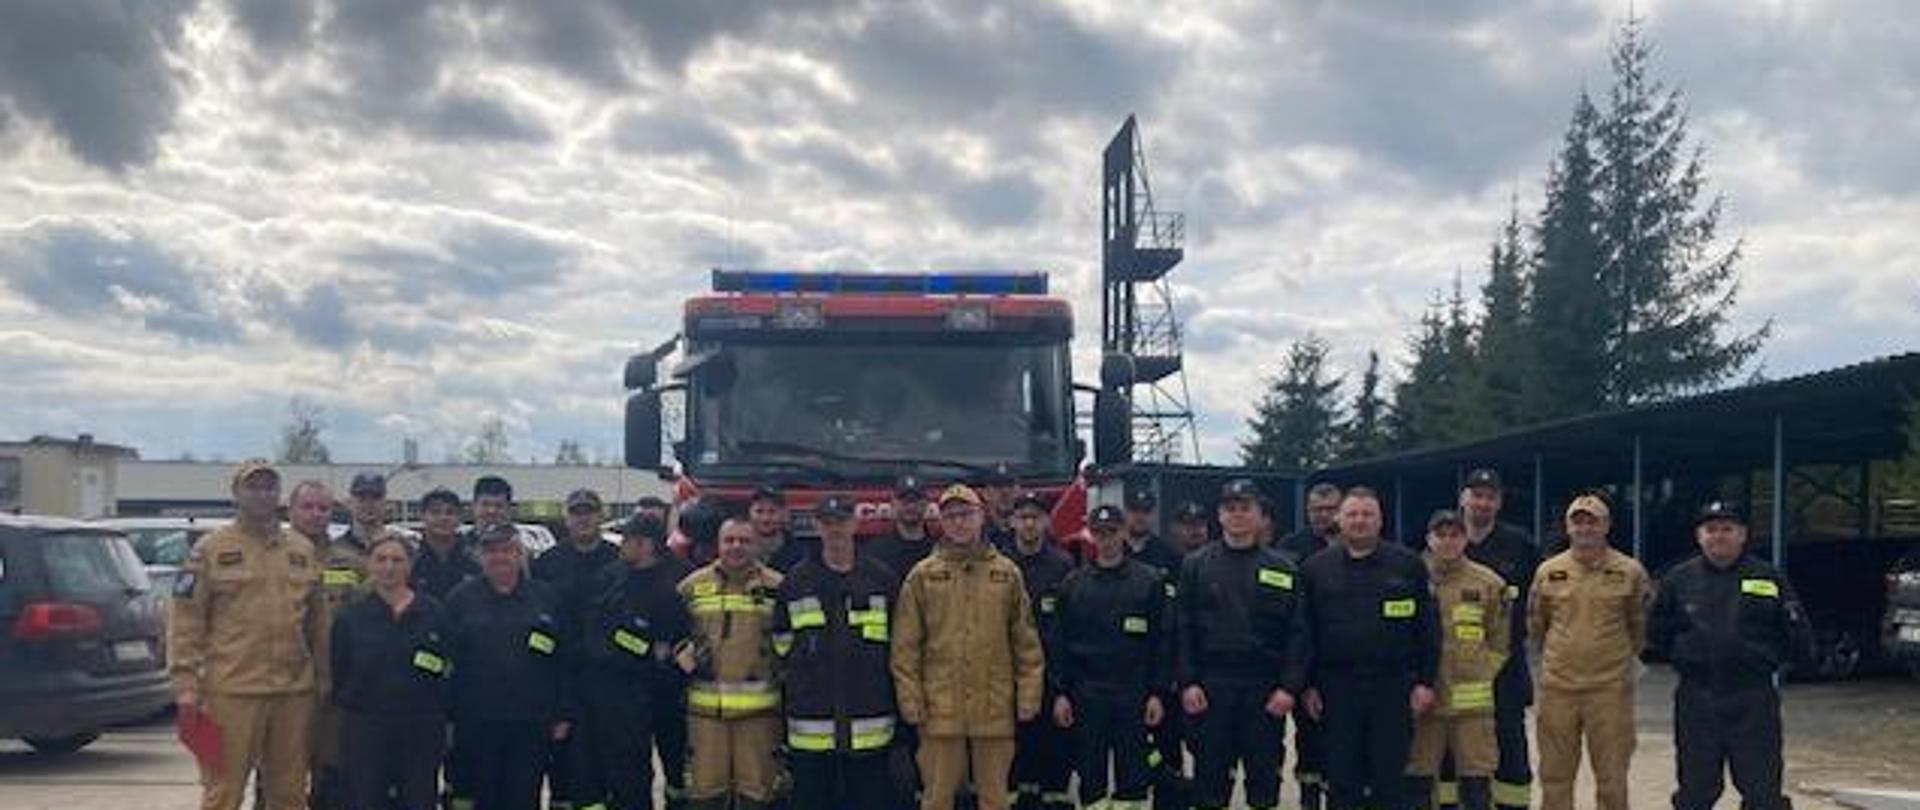 Wspólne zdjęcie dowódców jrg, zastępcy Komendanta Powiatowego w mundurach służbowych, oraz strażaków Ochotniczych straży pożarnych na tle samochodu ratowniczo-gaśniczego.